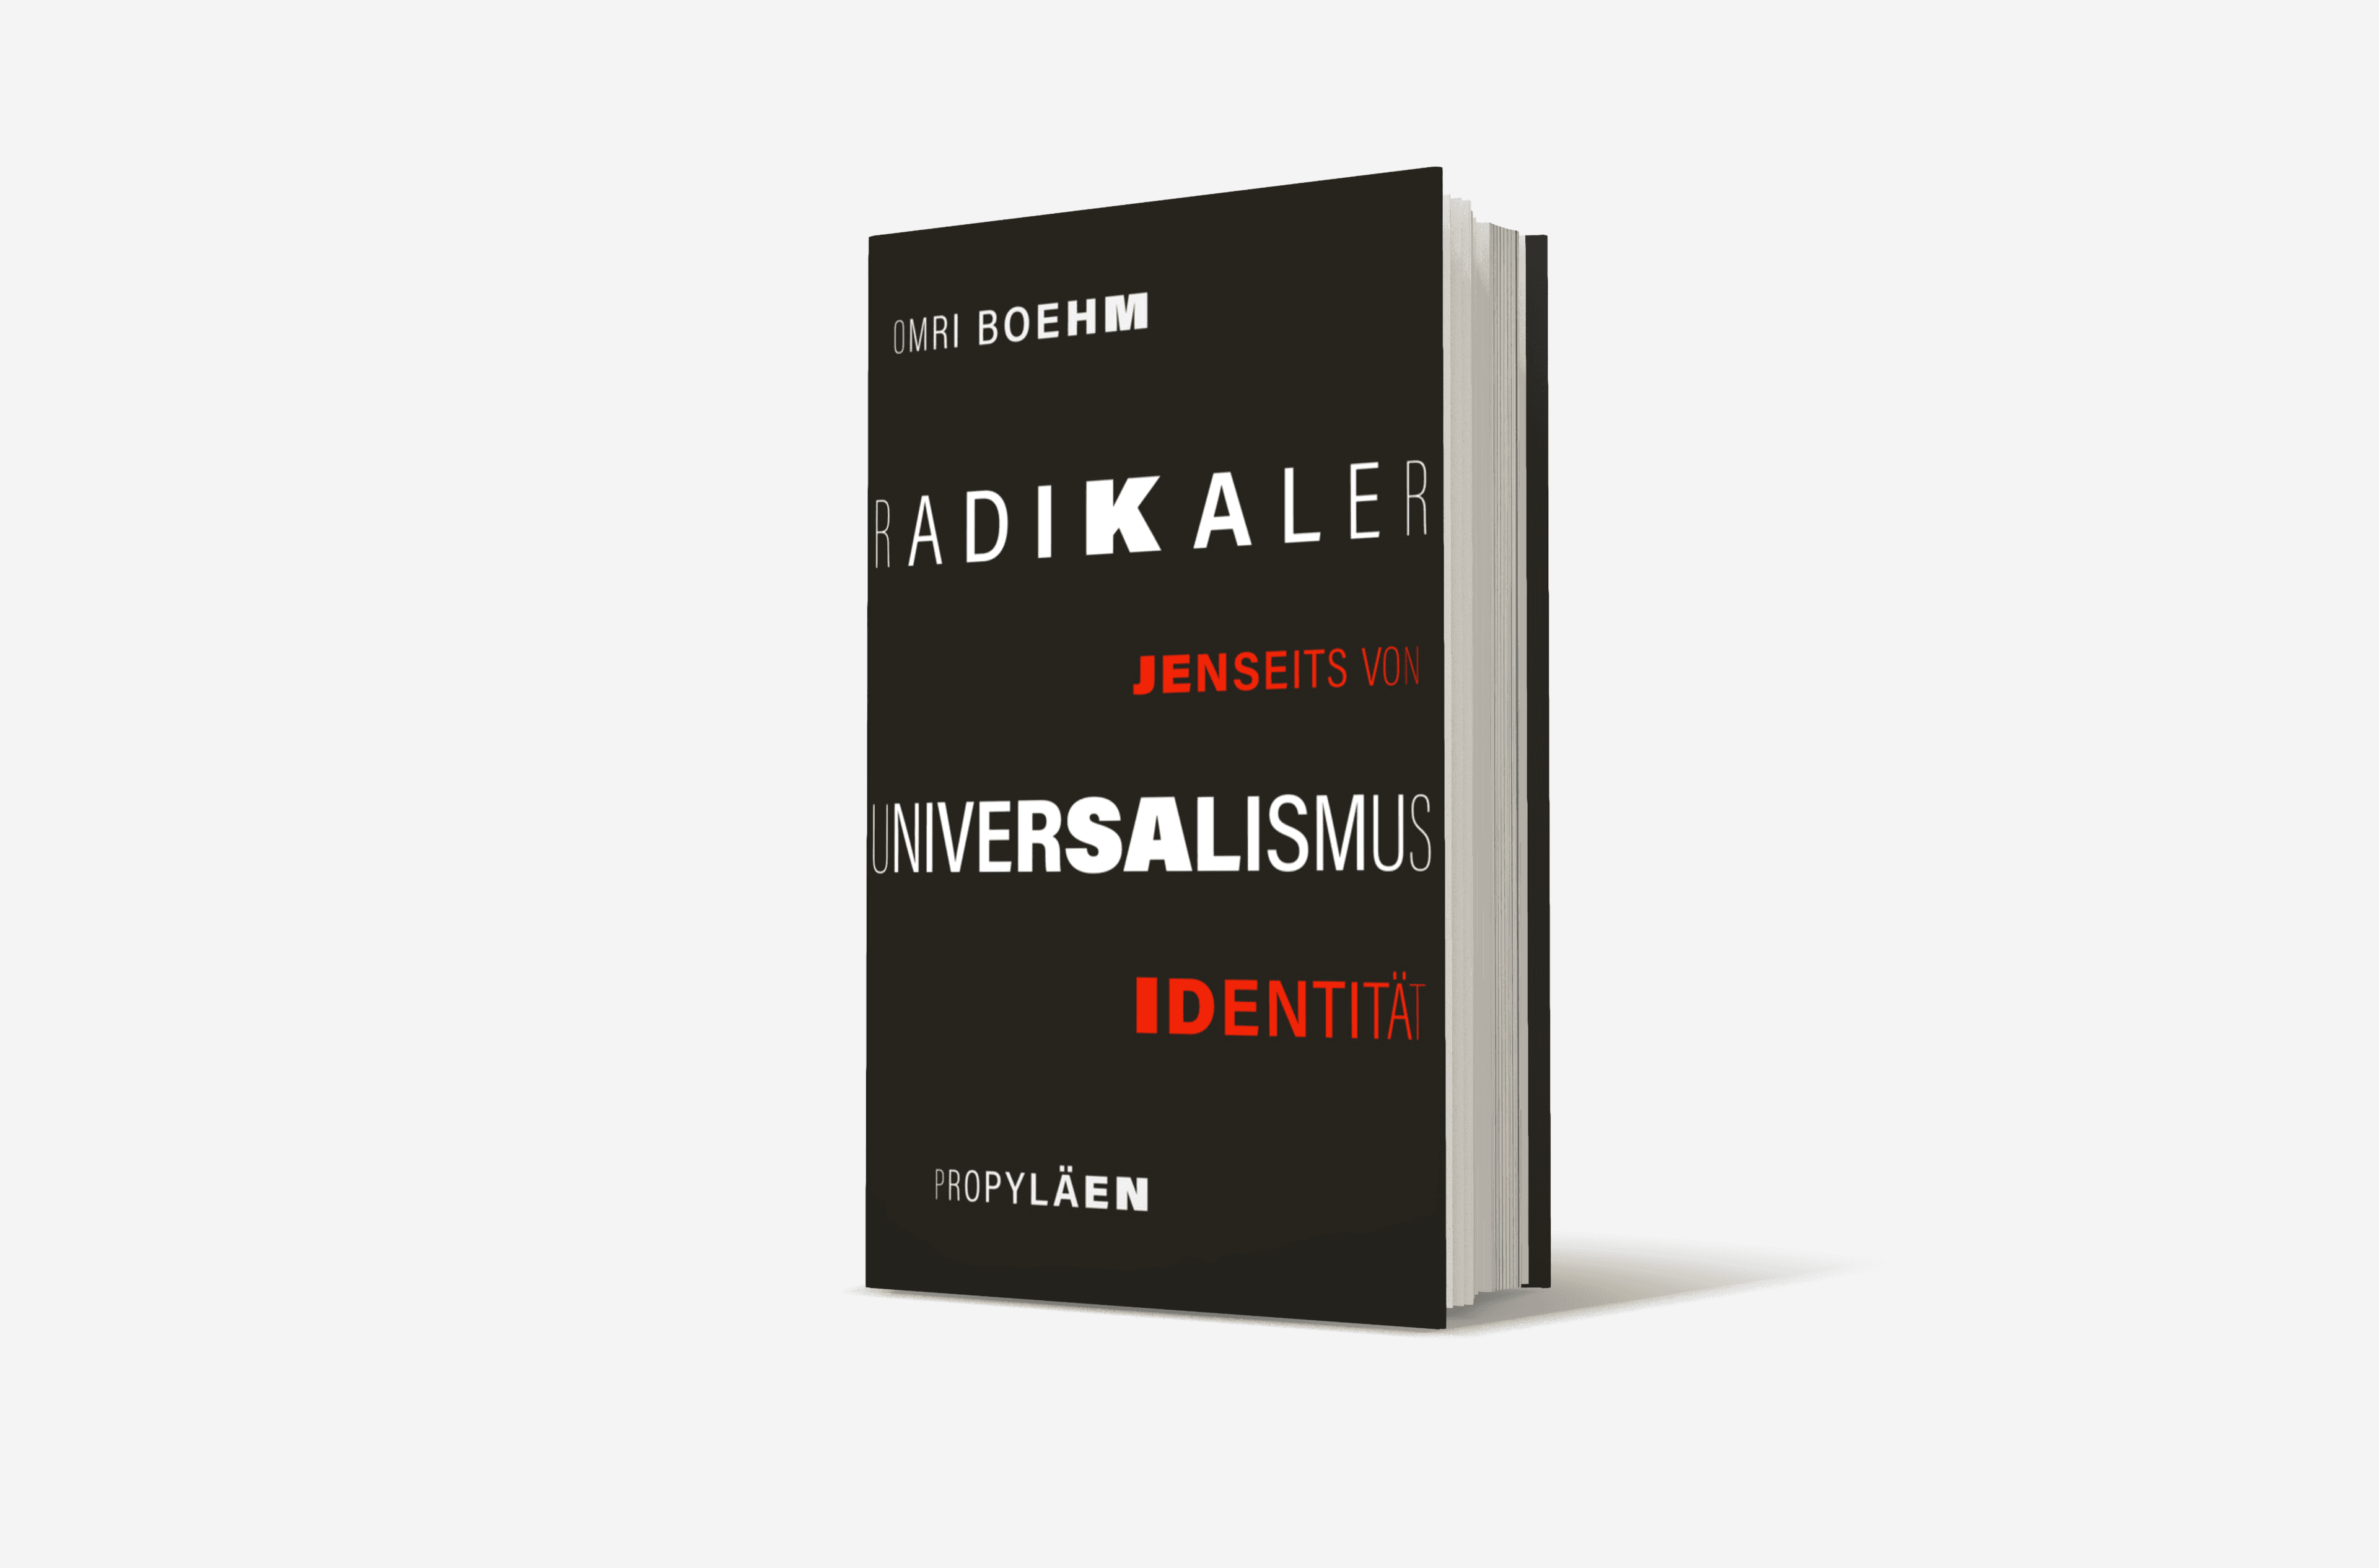 Buchcover von Radikaler Universalismus